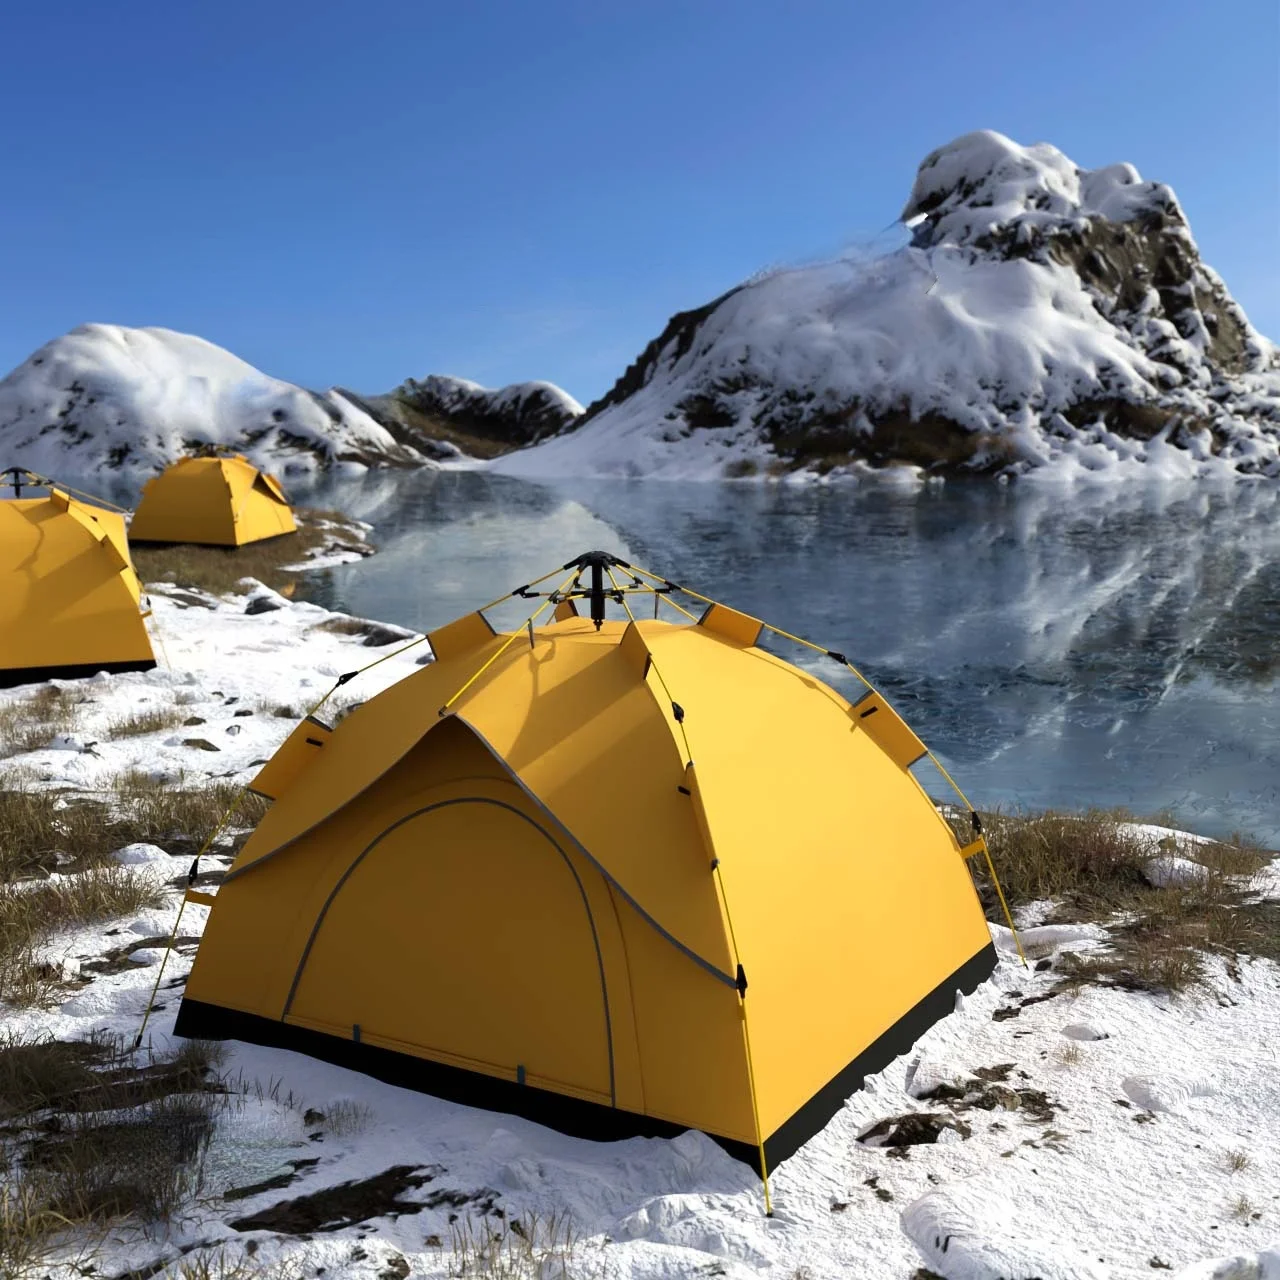 

Палатка Автоматическая на 3-4 человека, портативный Семейный тент для походов и путешествий, двухслойная, мгновенная установка